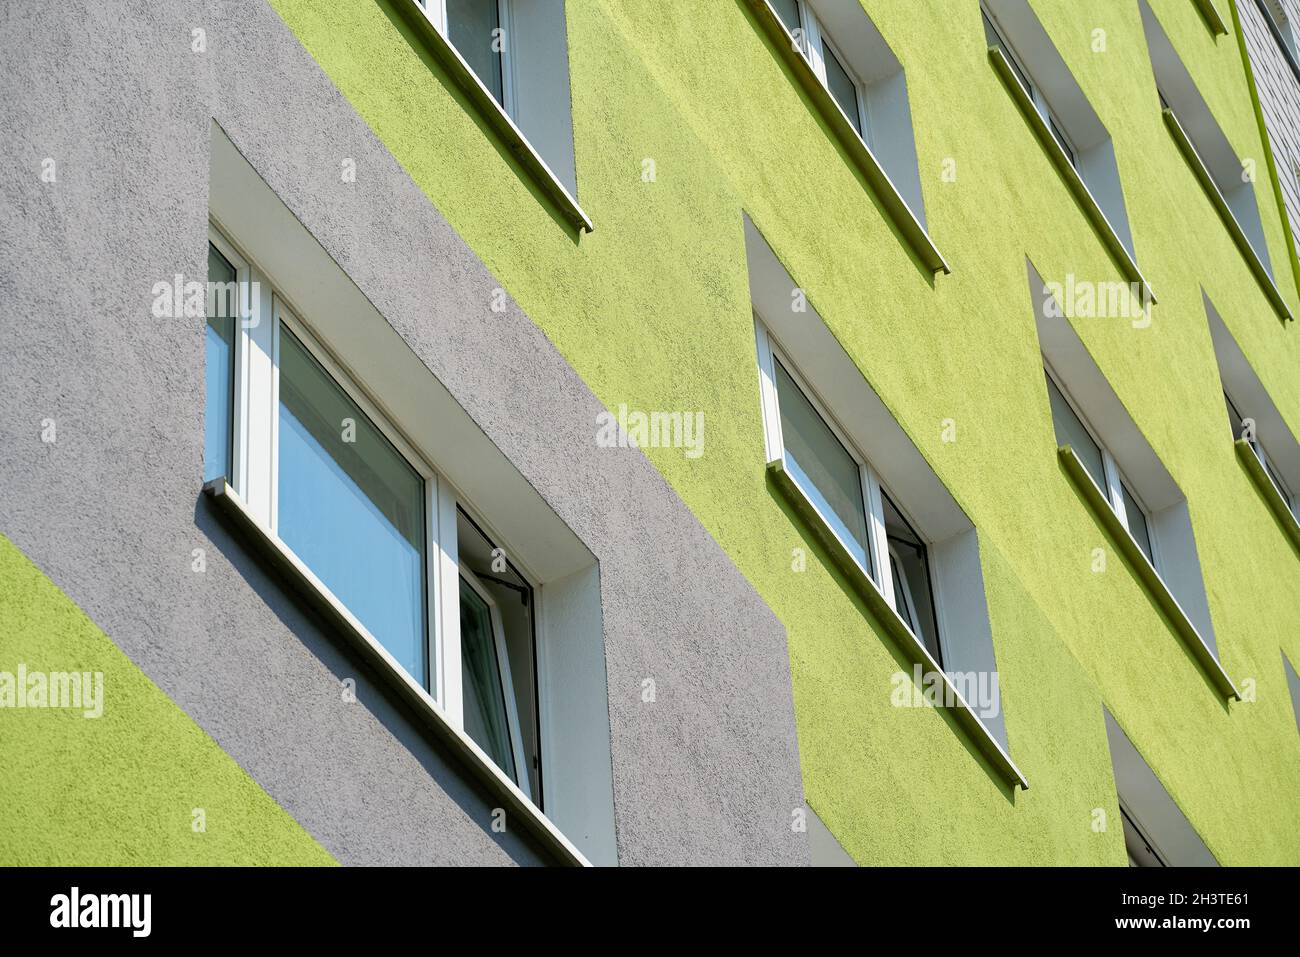 Fachada de un edificio prefabricado renovado en el distrito de Neustadt de Magdeburg, Alemania Foto de stock